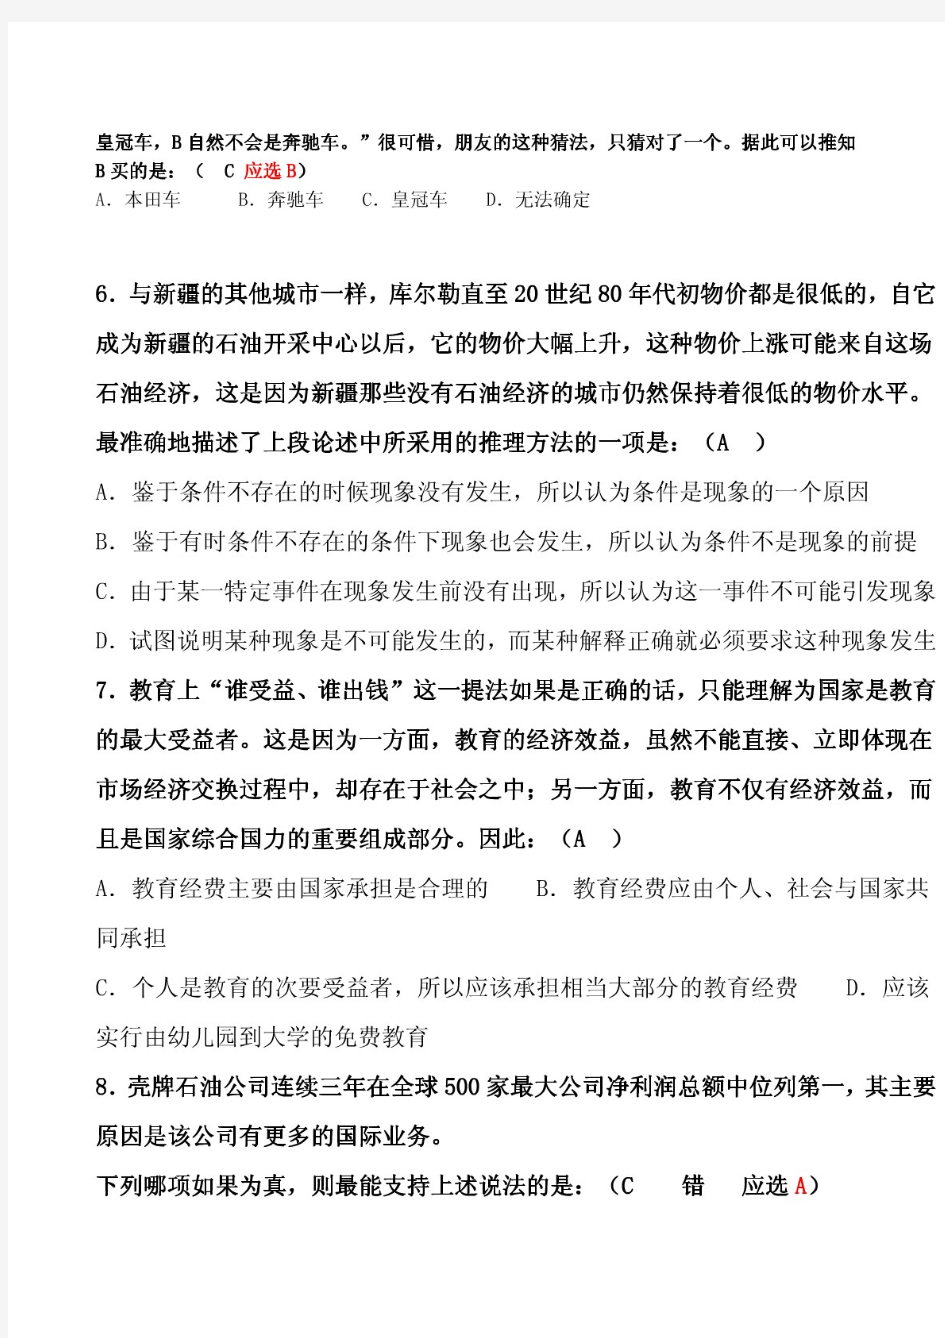 【精品】(2014.2.23答题01)深圳航空笔试第三套试题